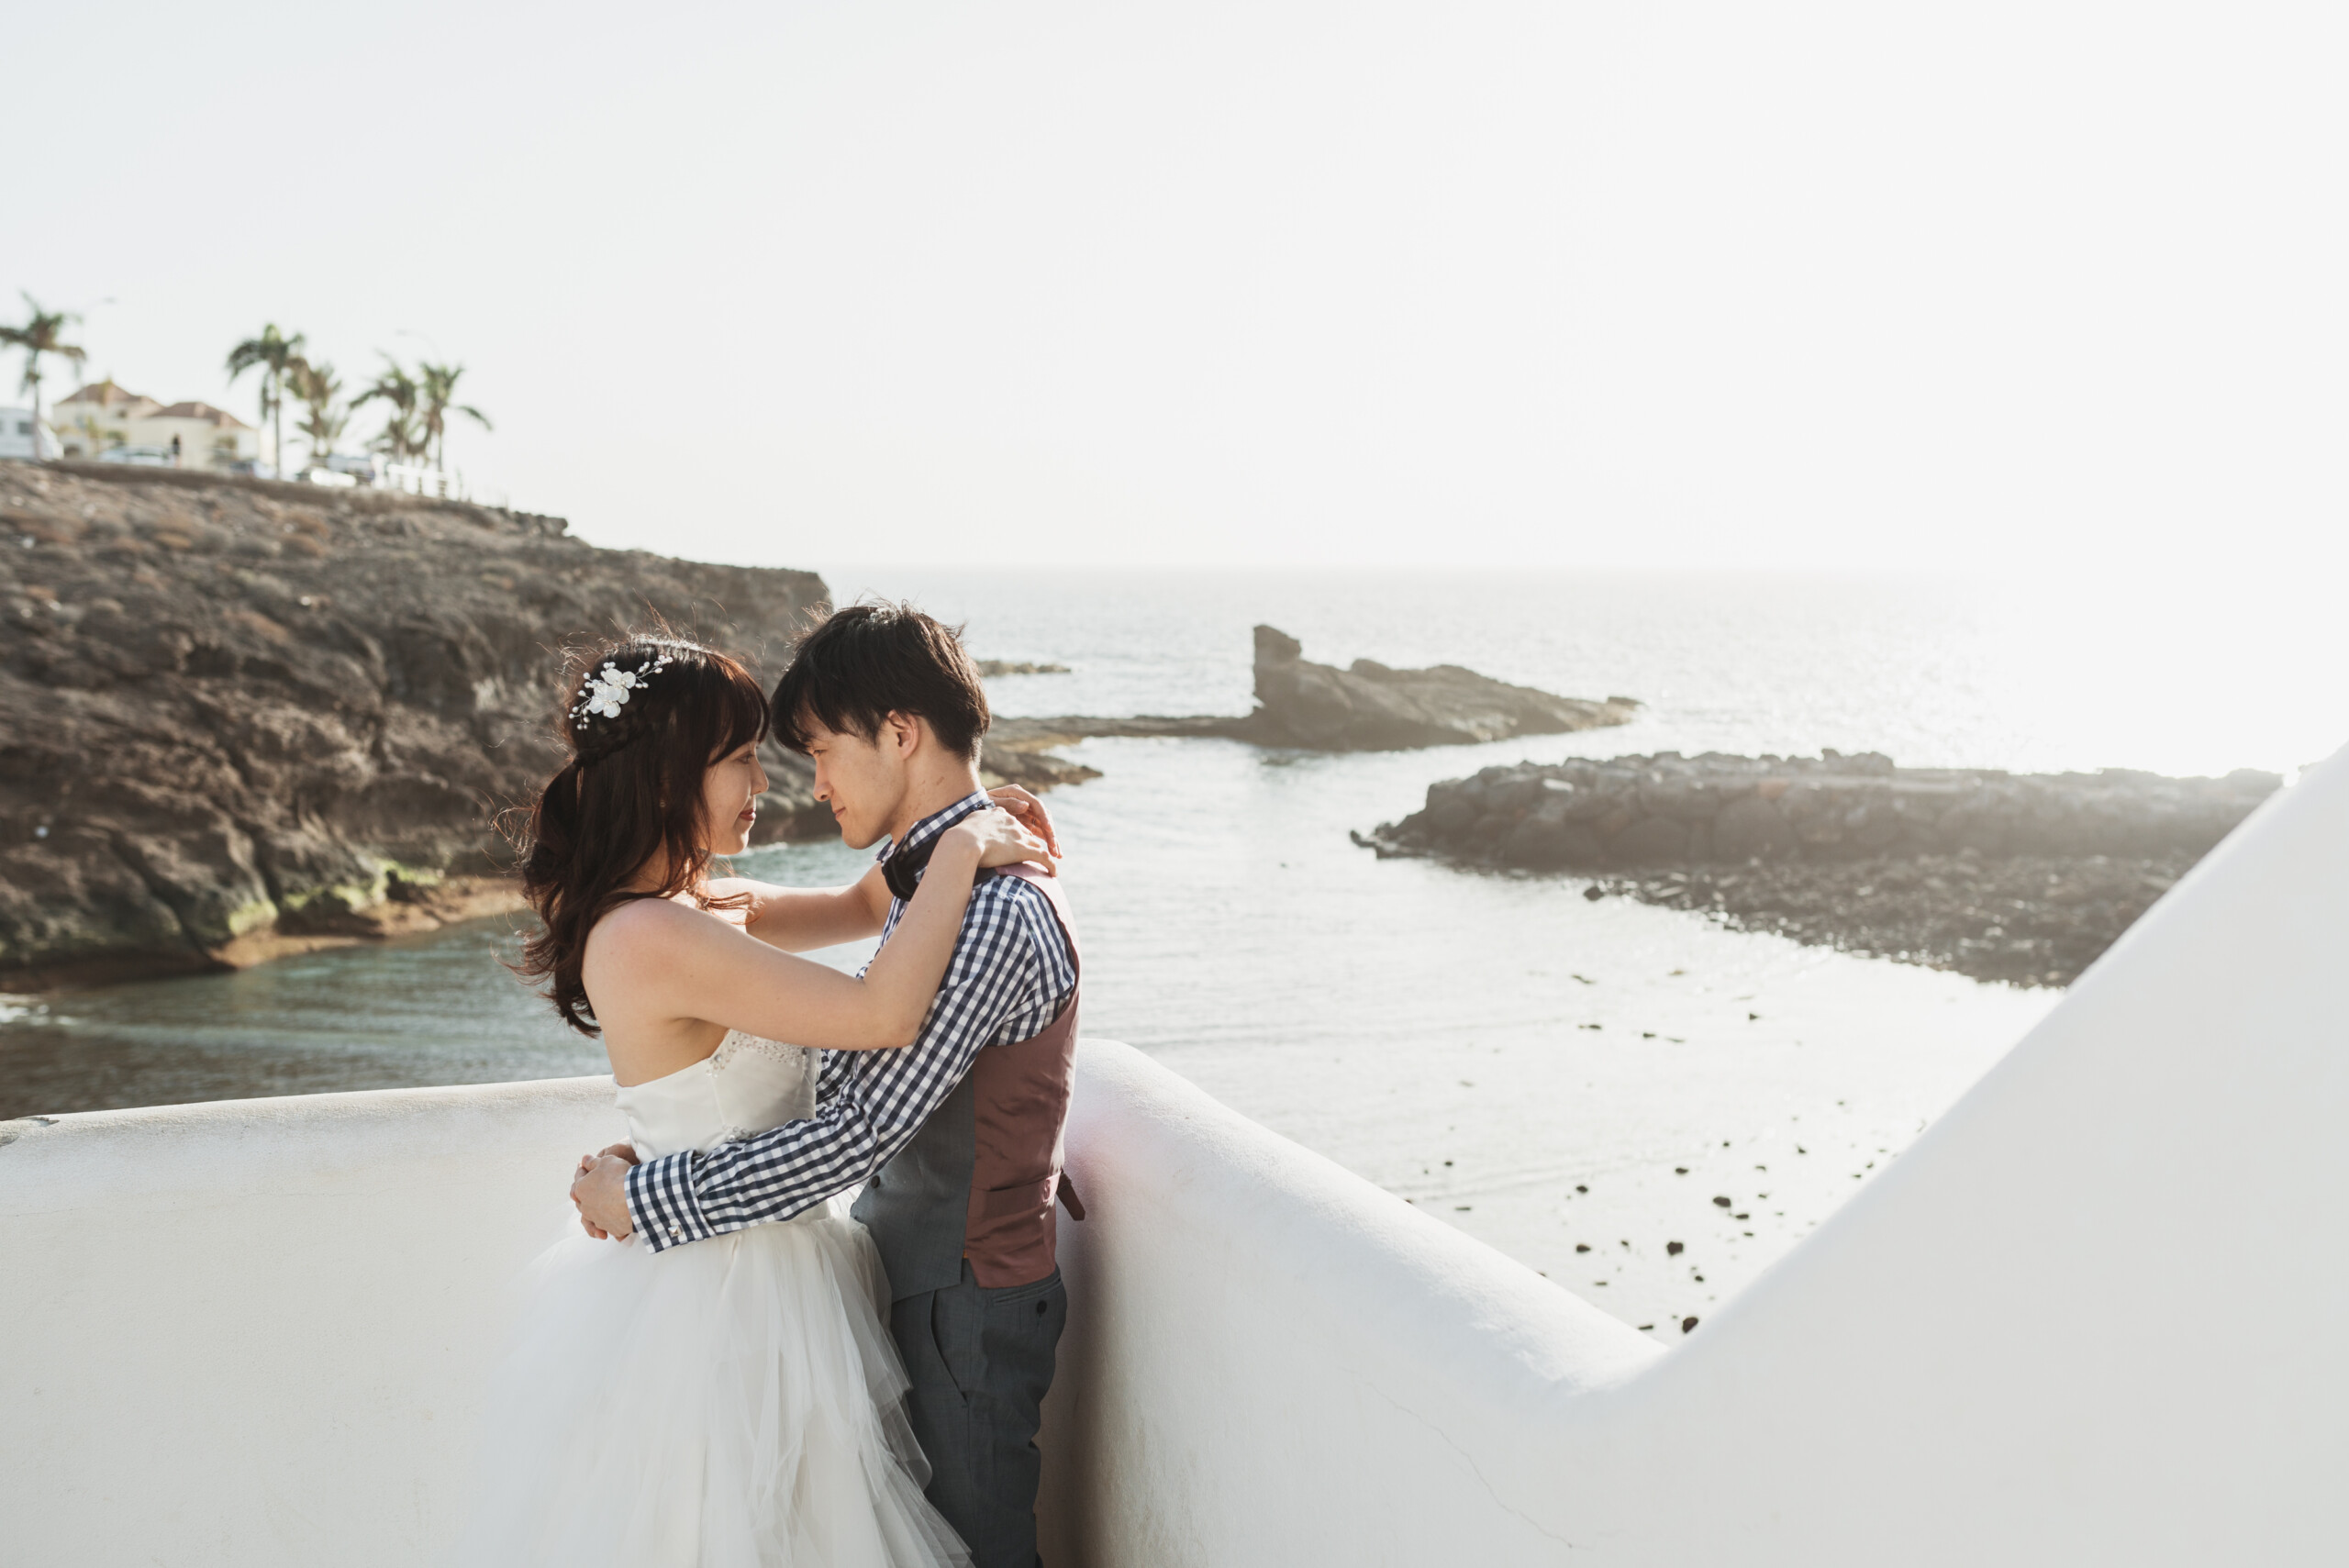 wedding photoshoot in Tenerife